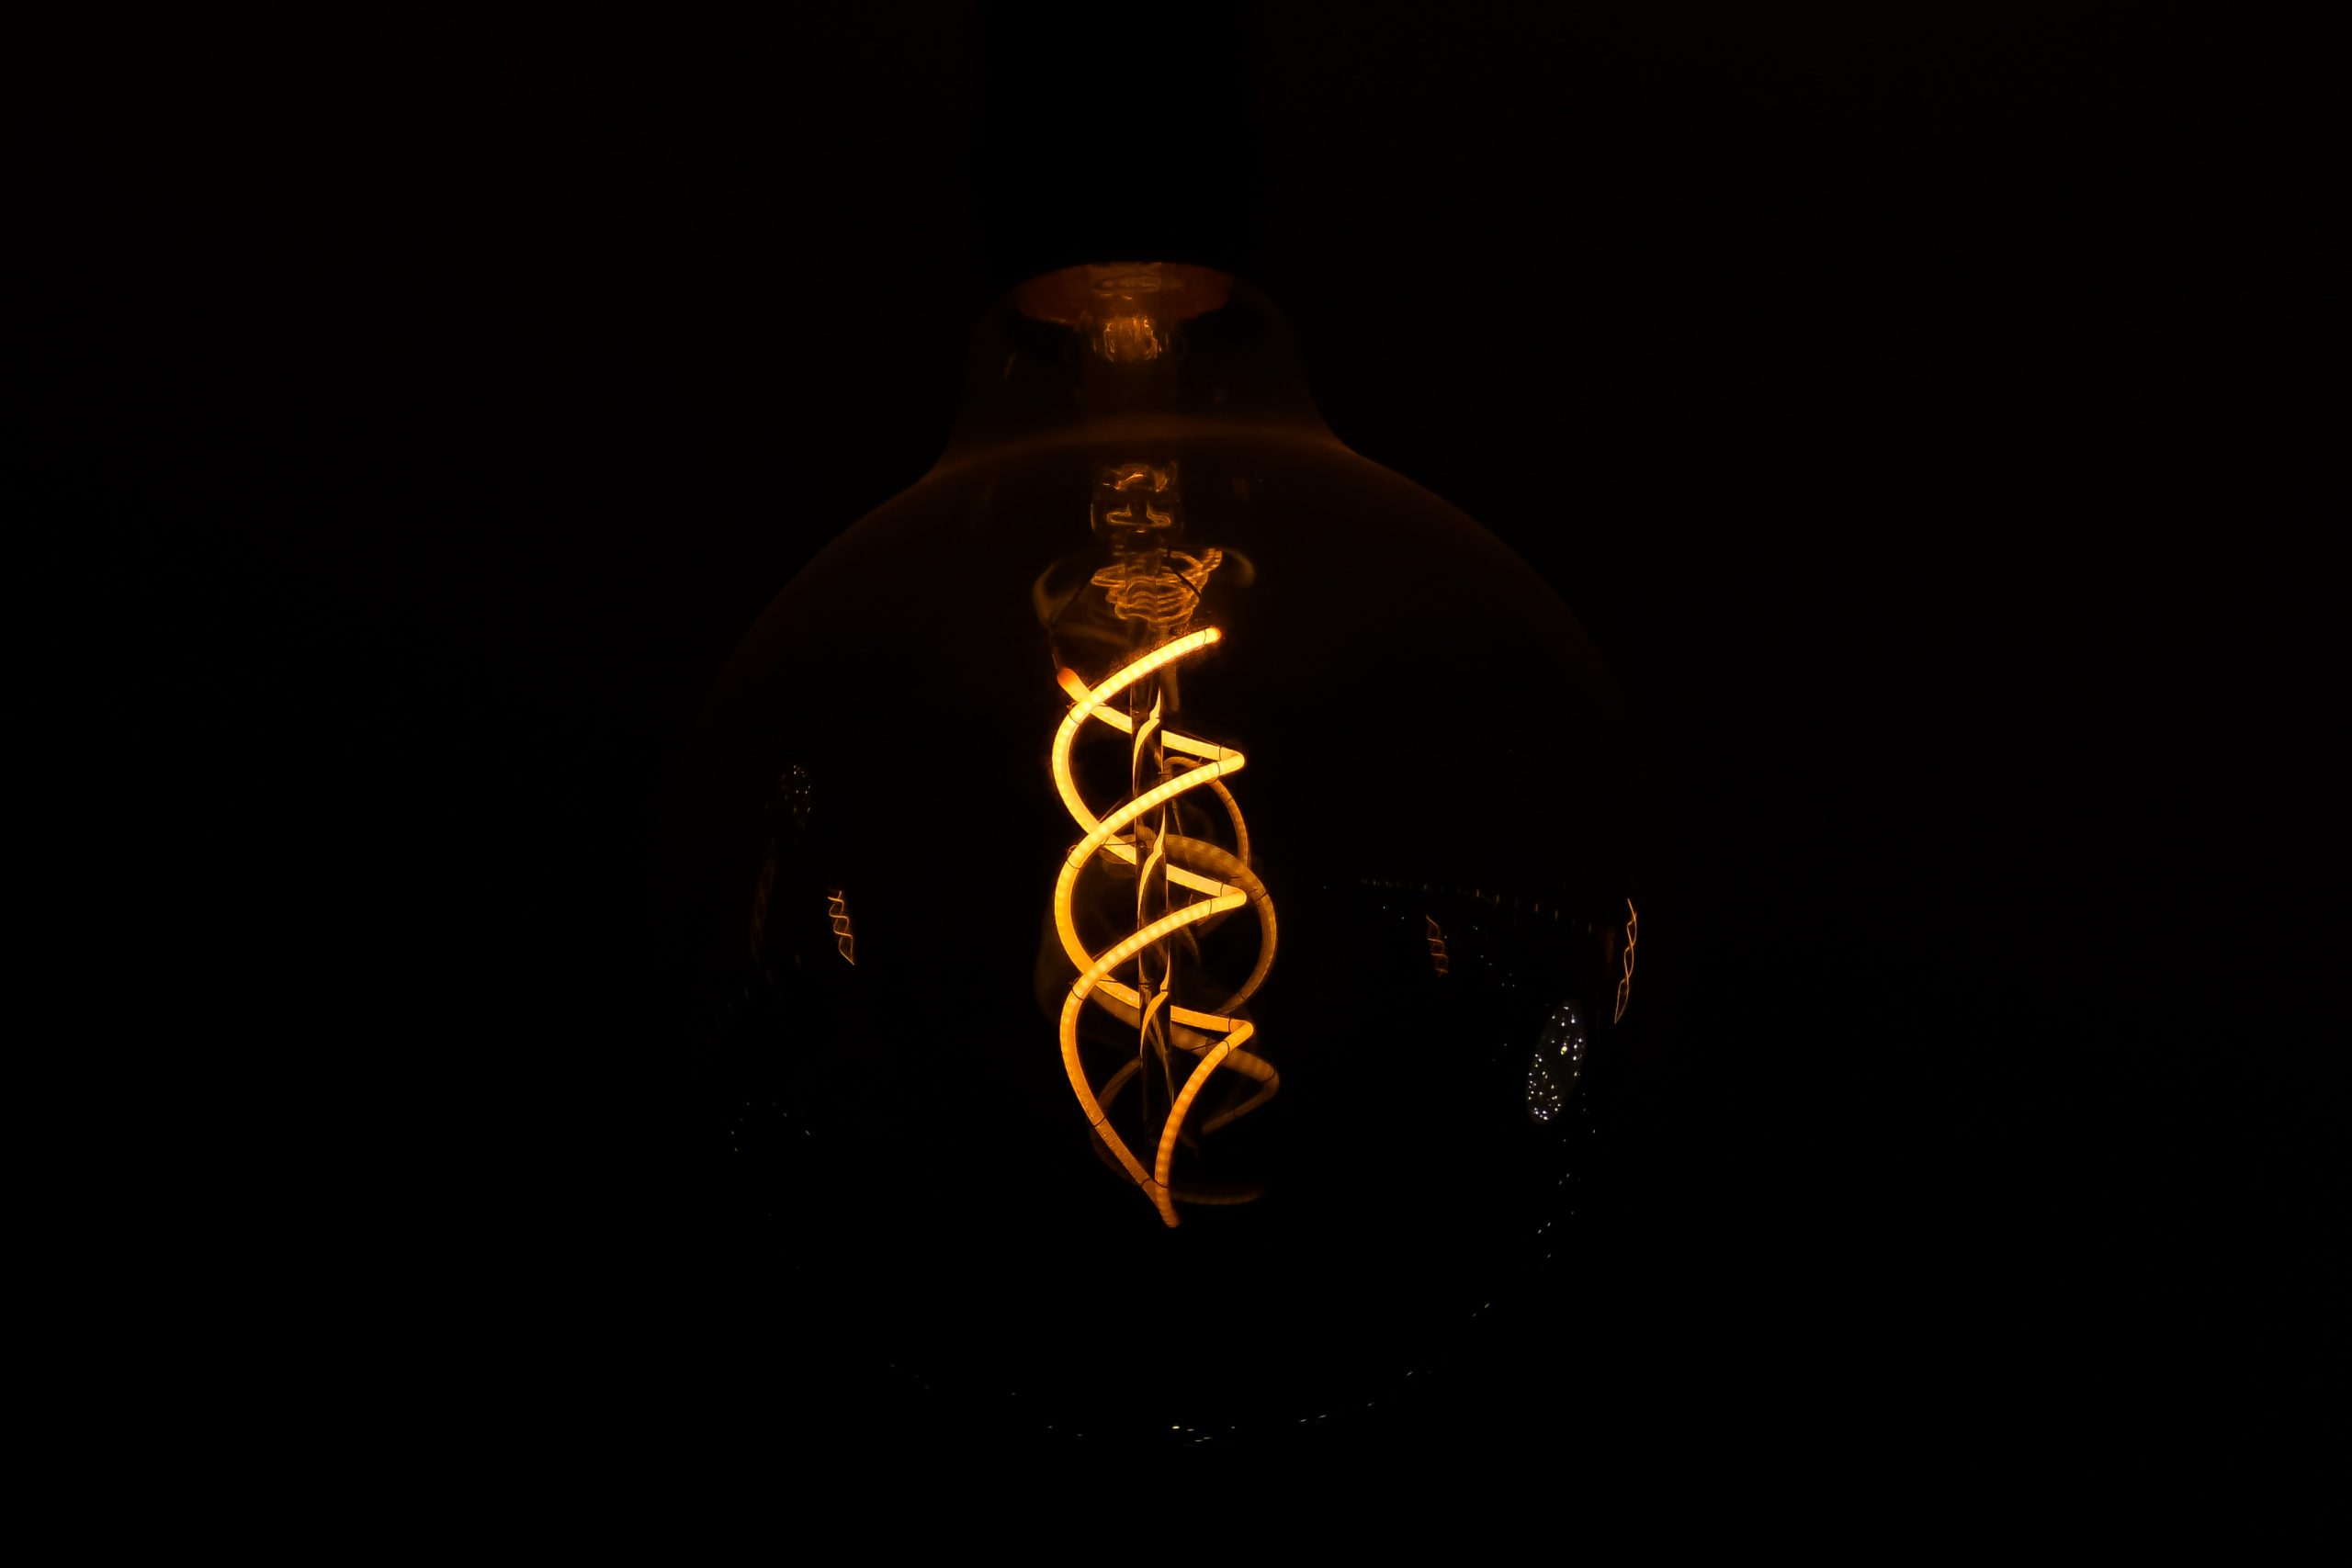 filament of a light bulb